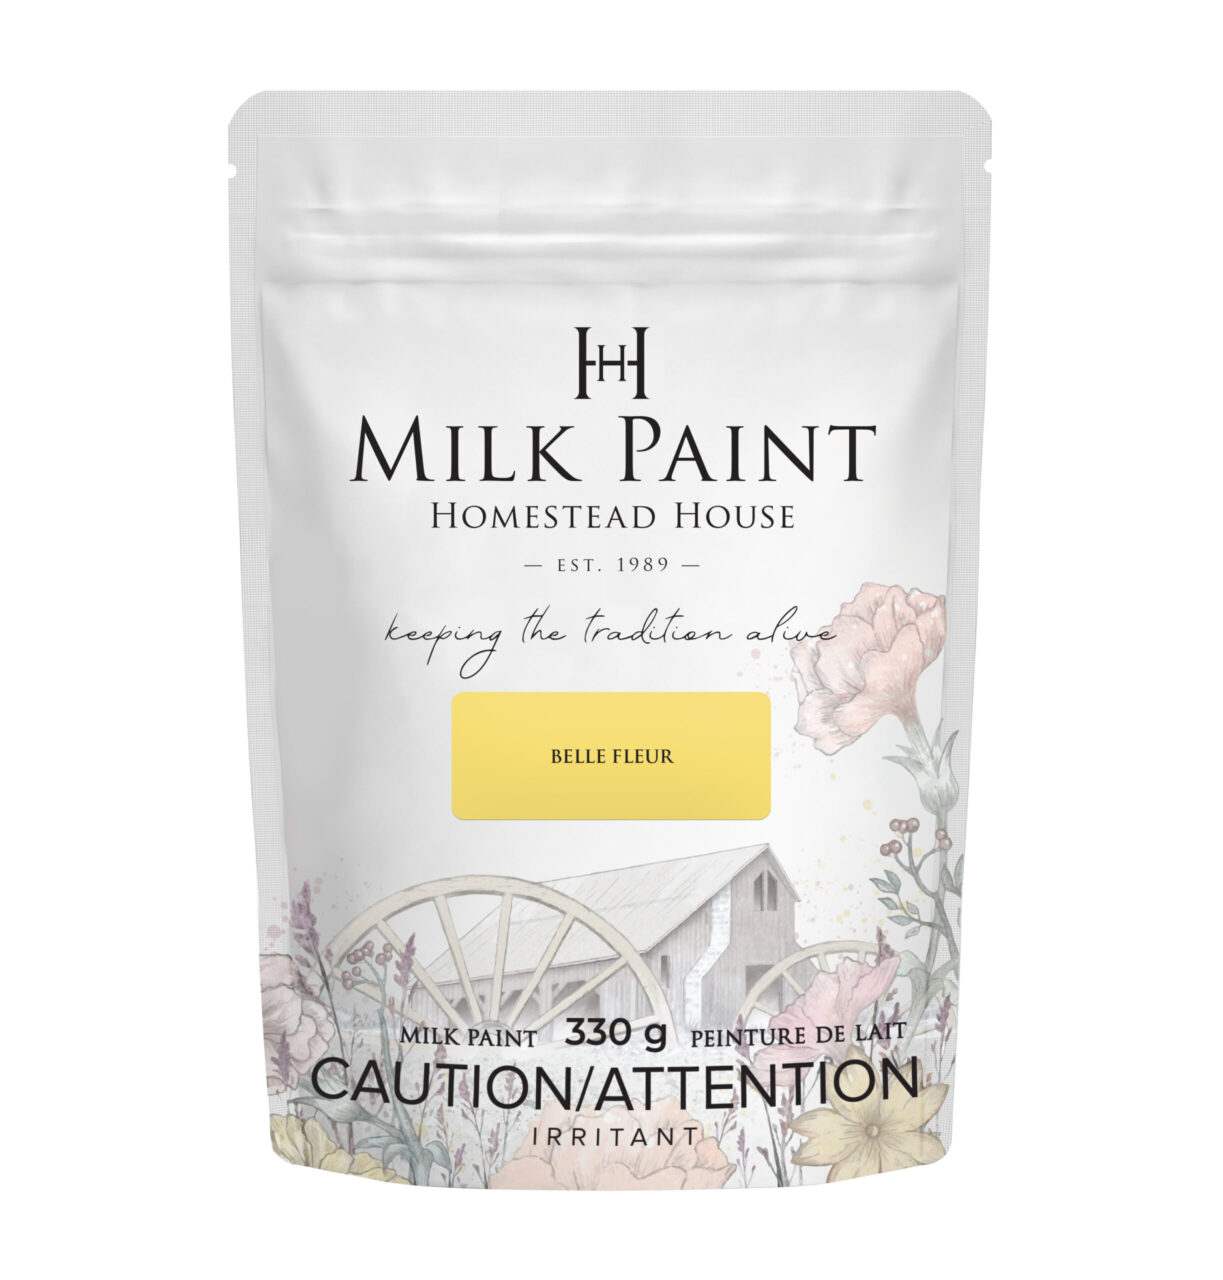 bag of Belle fleur milk paint